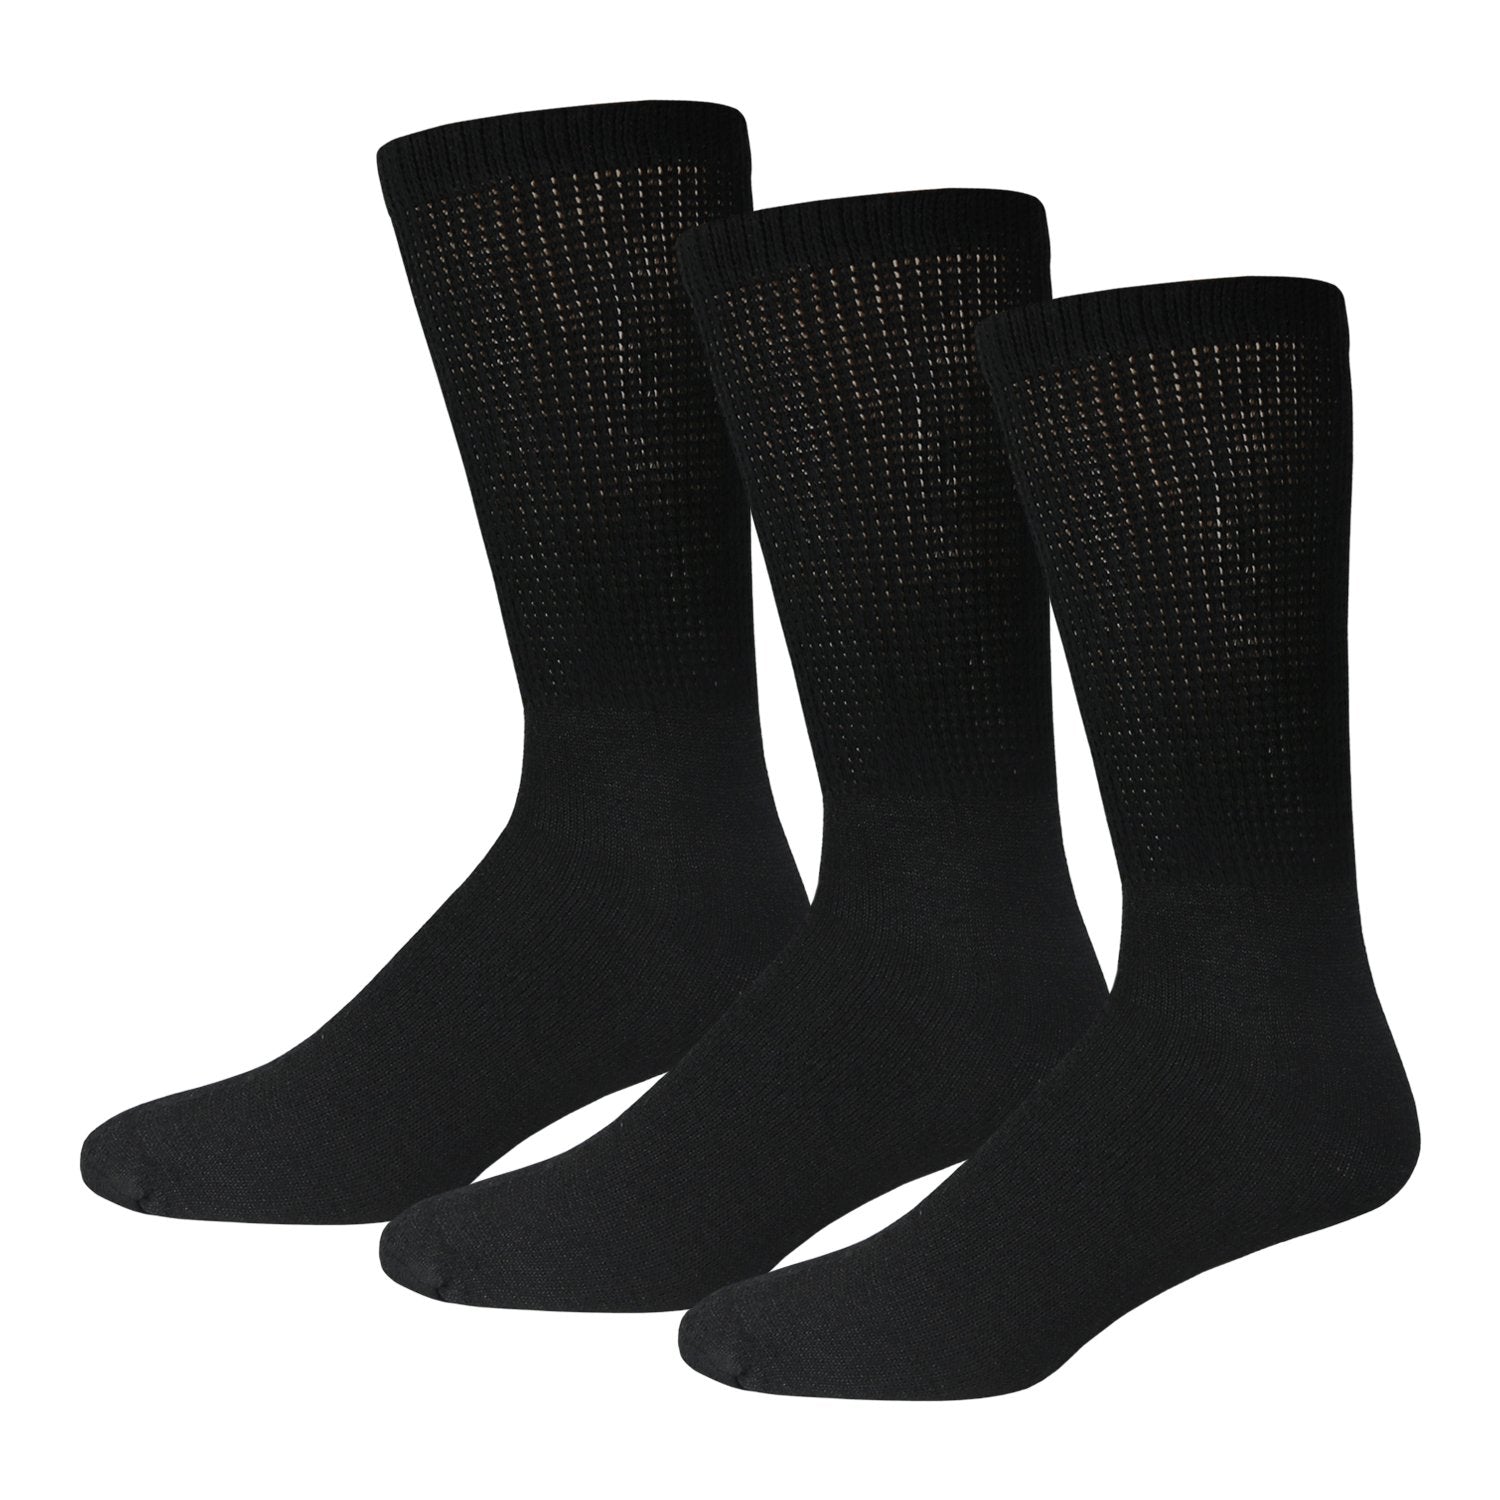 Ladies Black Cotton Diabetic Crew Socks With Loose Top 3 Pack